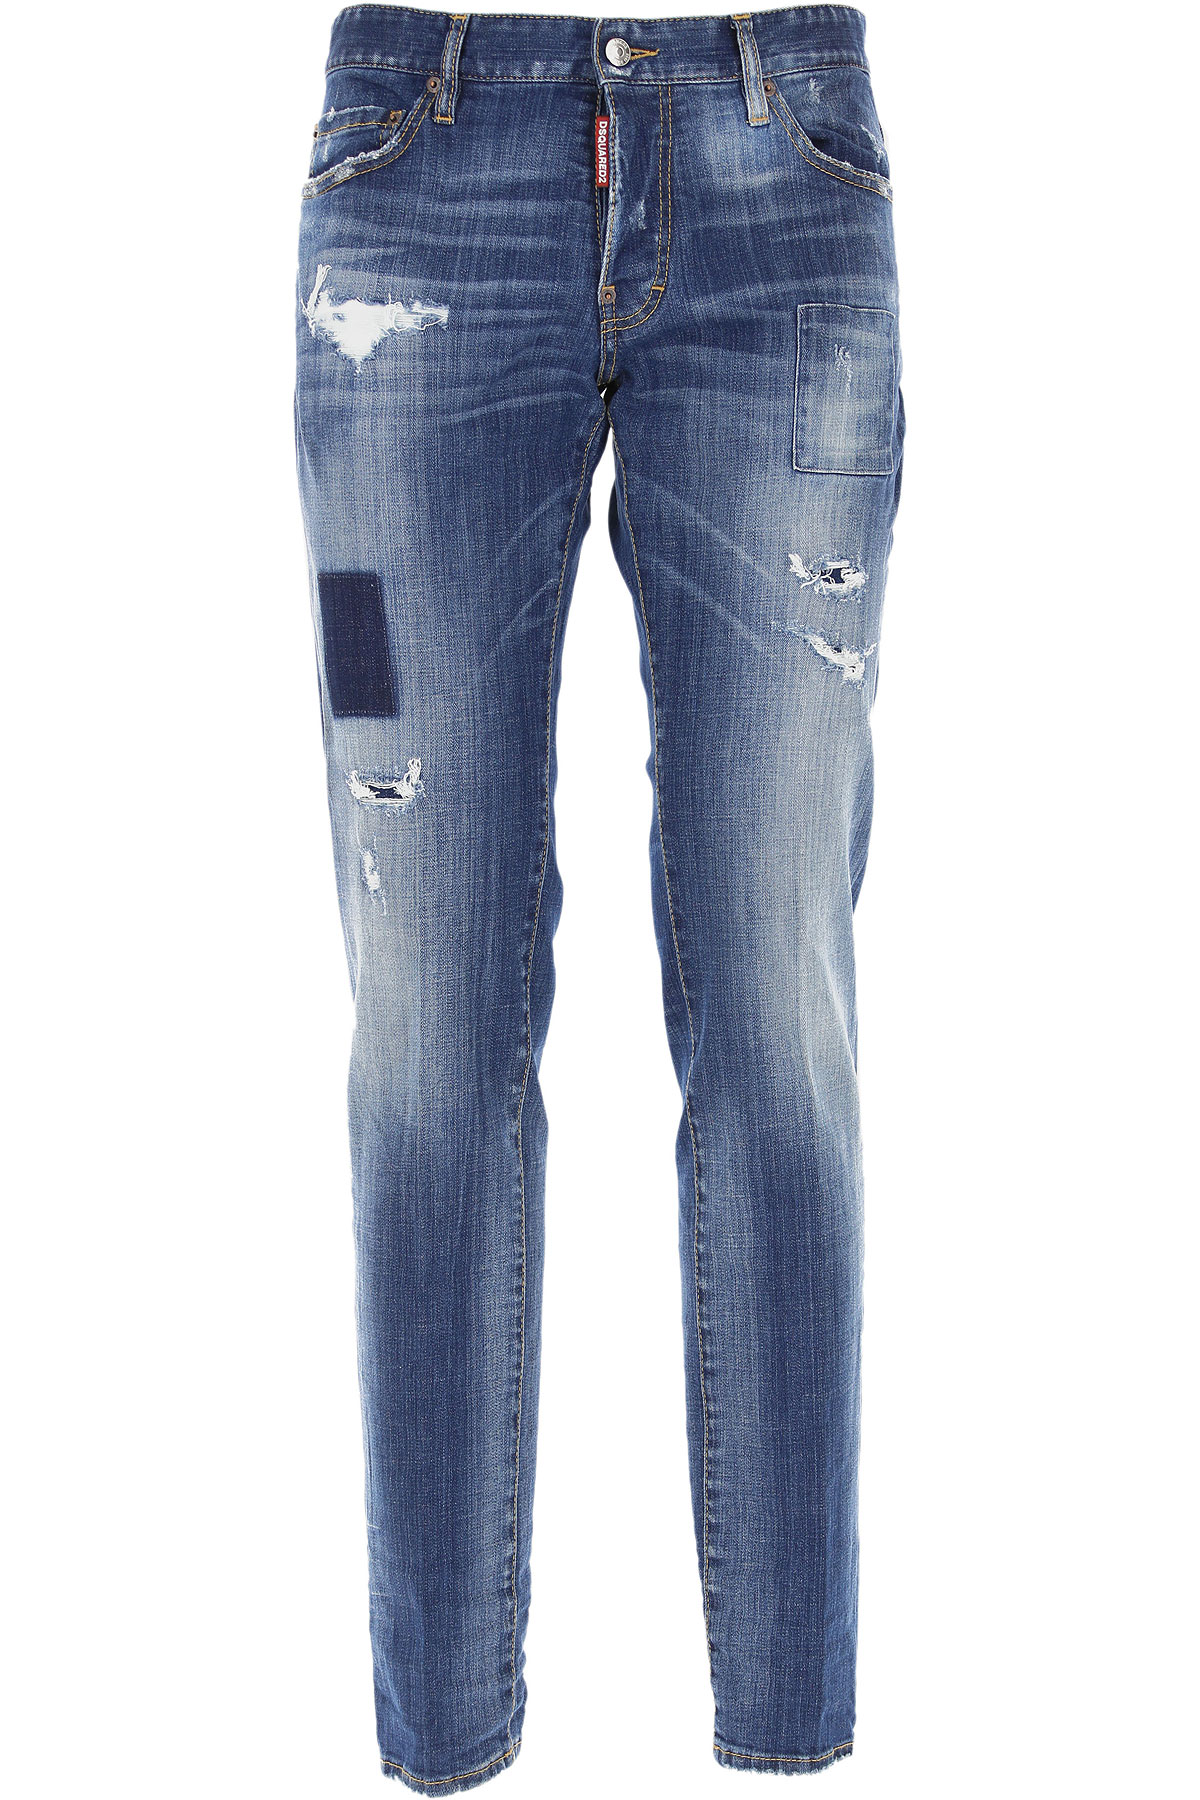 Dsquared Jeans, Bluejeans, Denim Jeans für Herren Günstig im Sale, Blau, Baumwolle, 2017, 48 50 52 54